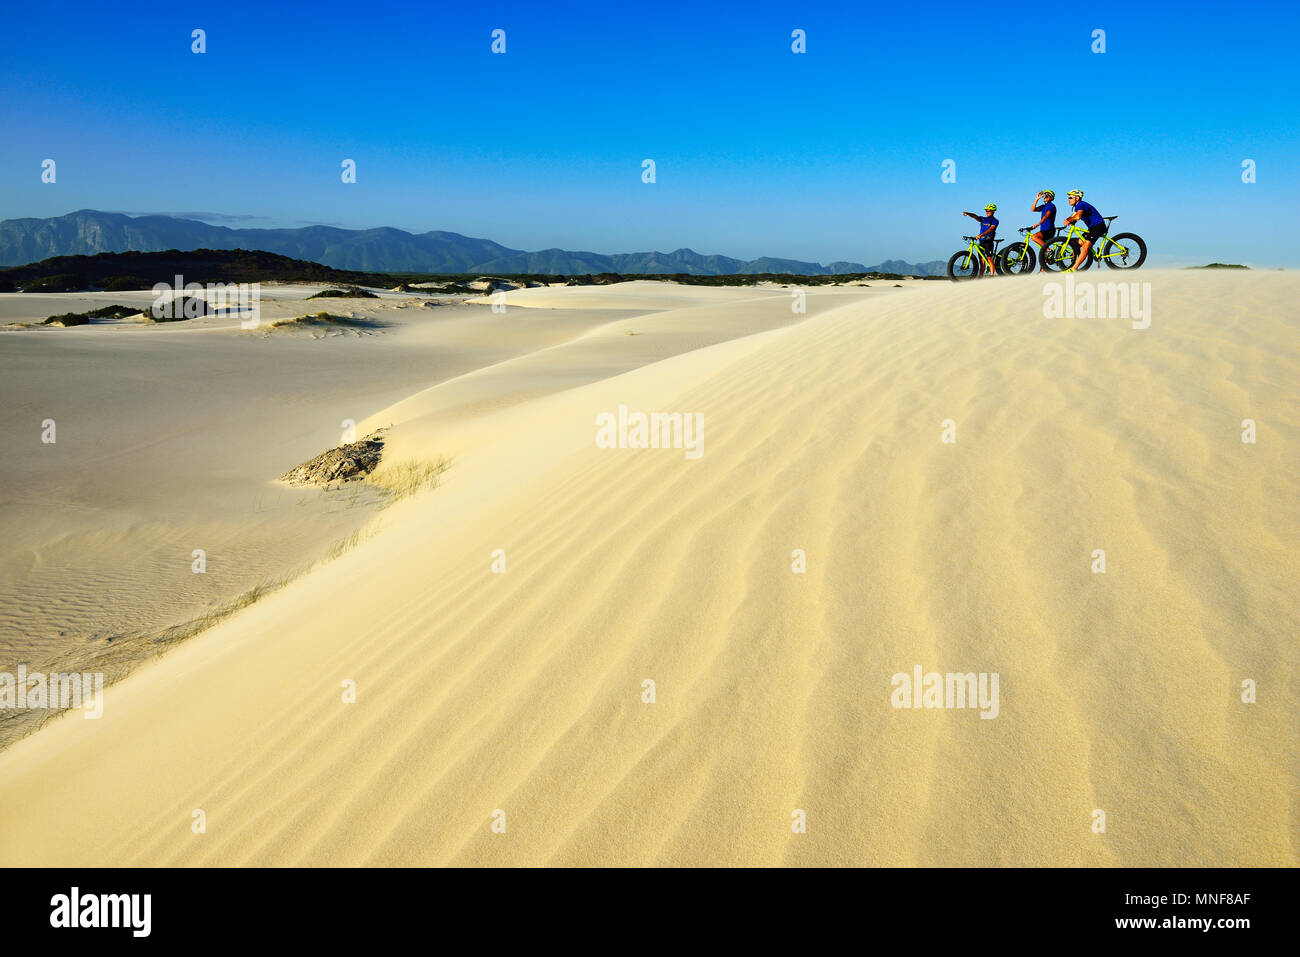 Randonnée cycliste avec de grosses motos sur dunes de sable, randonnée à vélo, réserve naturelle, de Kelders, Italie, Western Cape, Afrique du Sud Banque D'Images